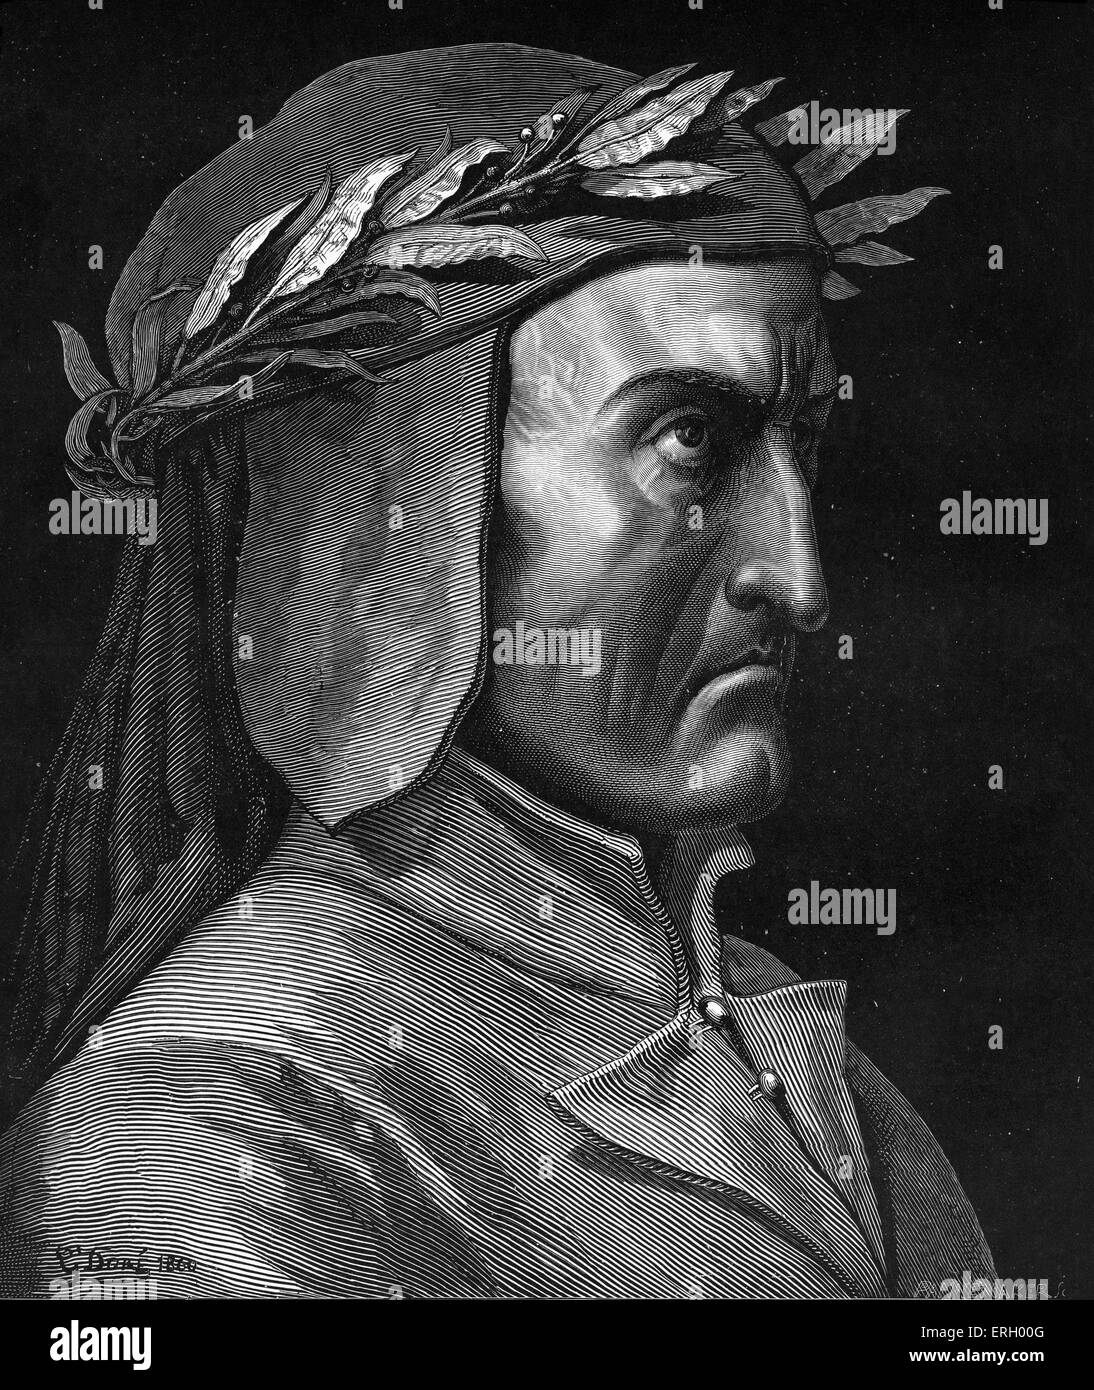 Dante Alighieri, Profilbildnis mit Lorbeerkranz.  Italienischer Dichter, 1265-1321. Stockfoto